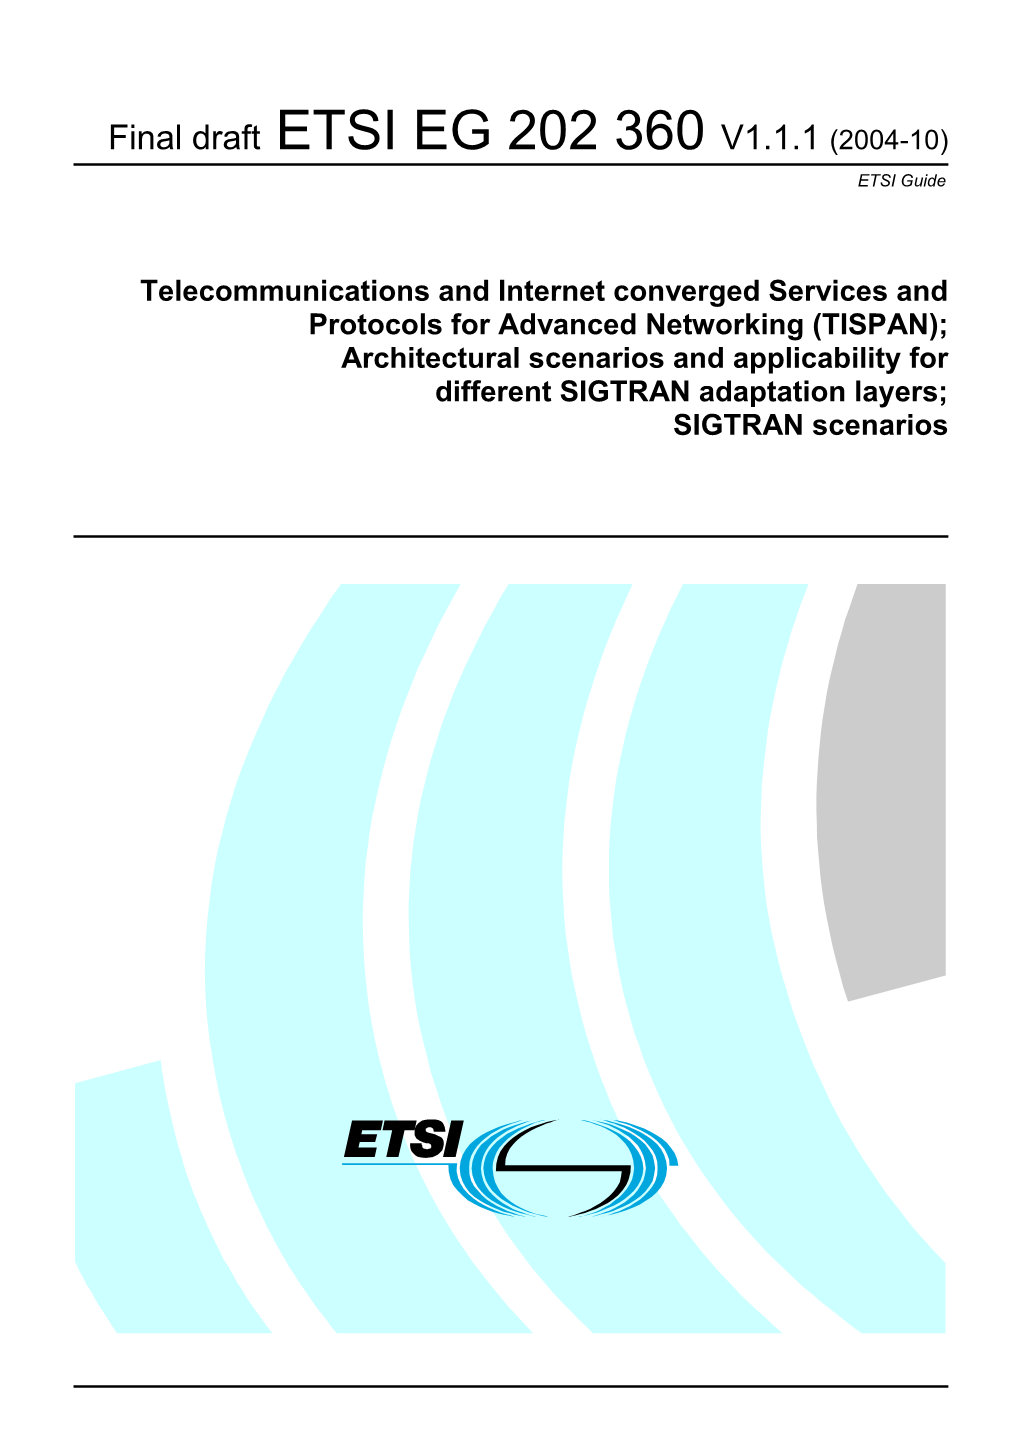 Final Draft ETSI EG 202 360 V1.1.1 (2004-10) ETSI Guide